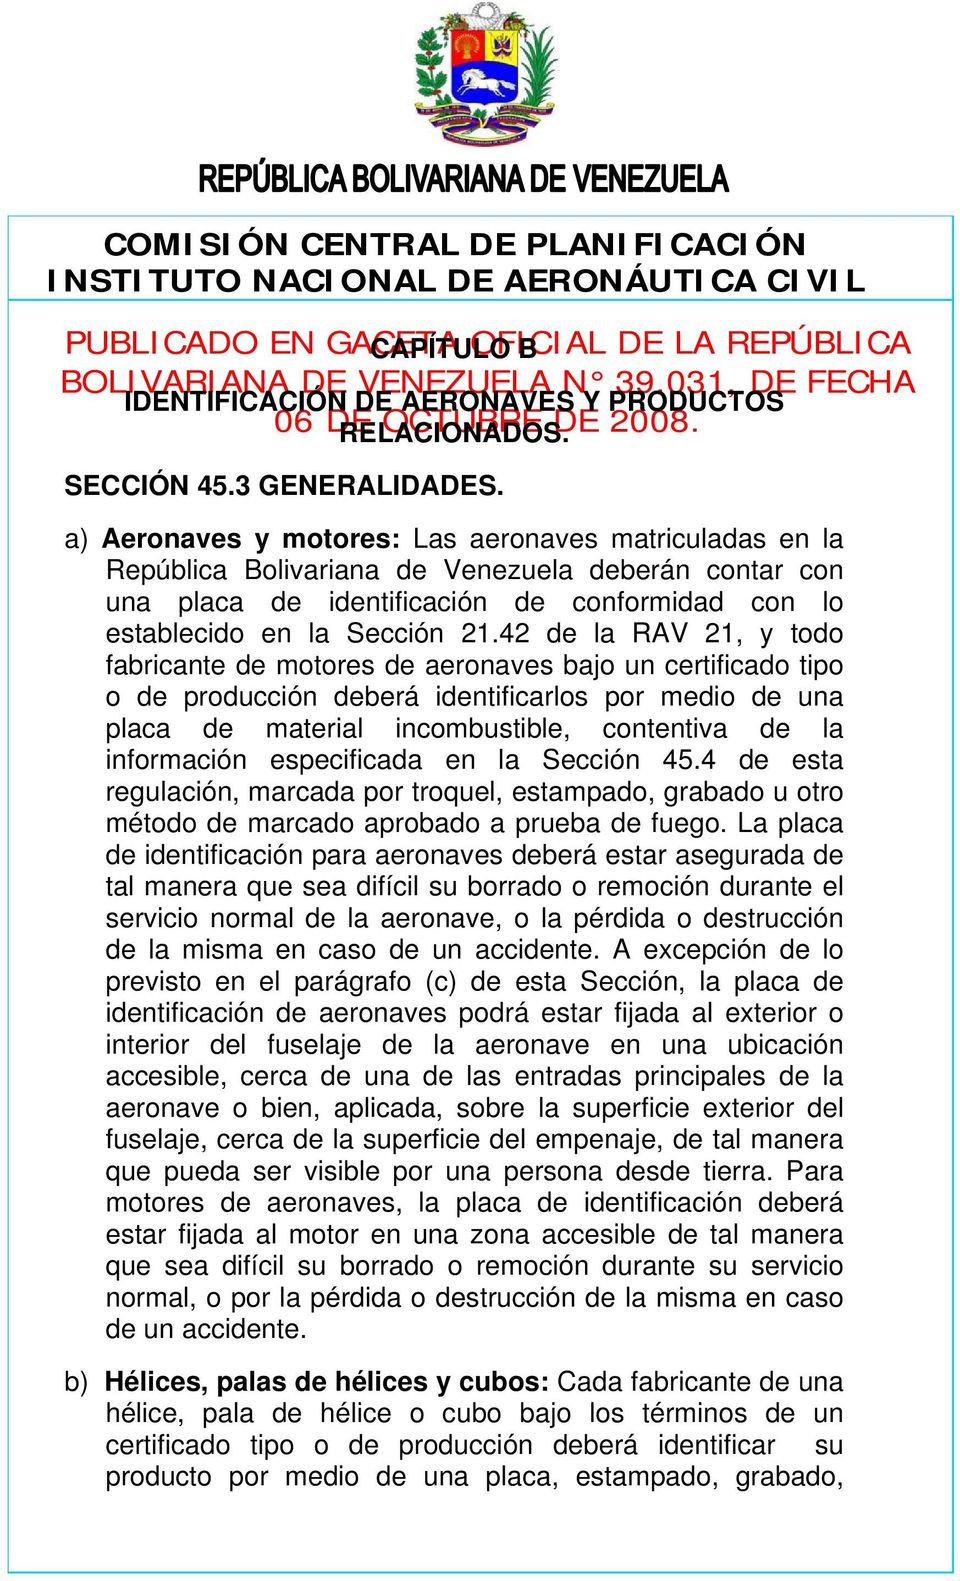 a) Aeronaves y motores: Las aeronaves matriculadas en la República Bolivariana de Venezuela deberán contar con una placa de identificación de conformidad con lo establecido en la Sección 21.